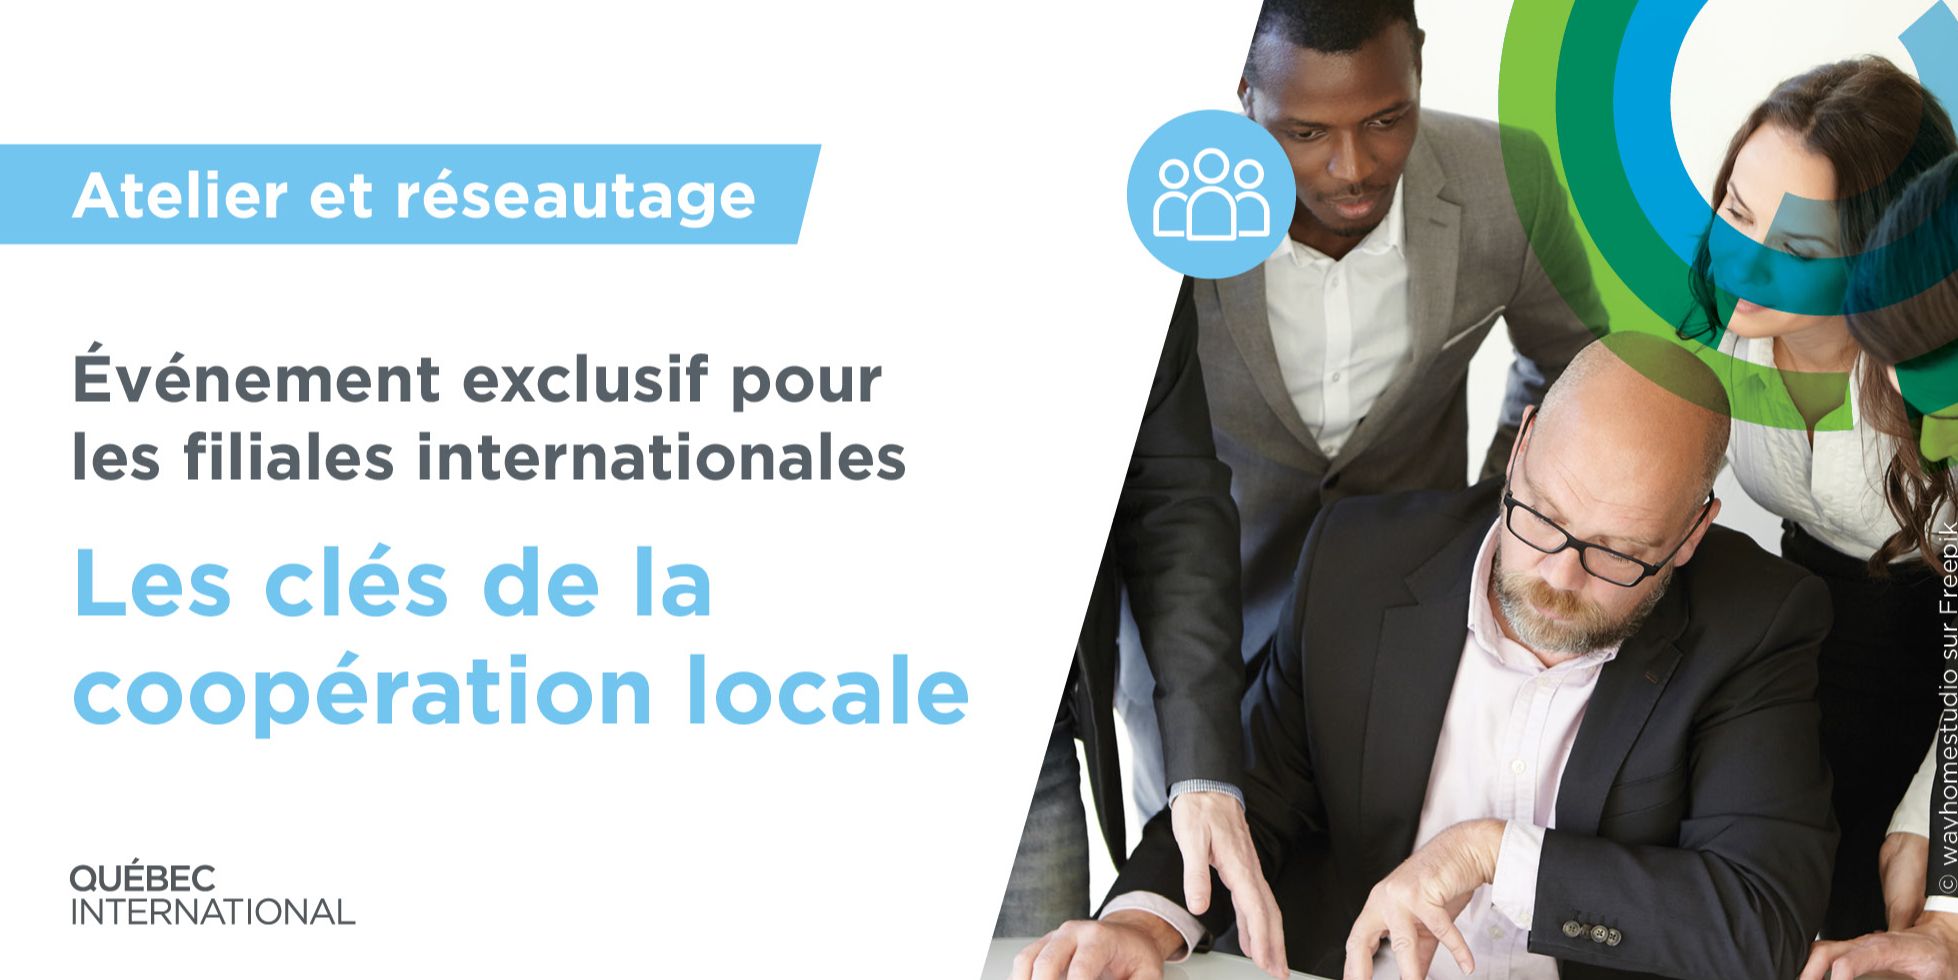 Filiales internationales, découvrez les clés de la coopération locale face à vos enjeux